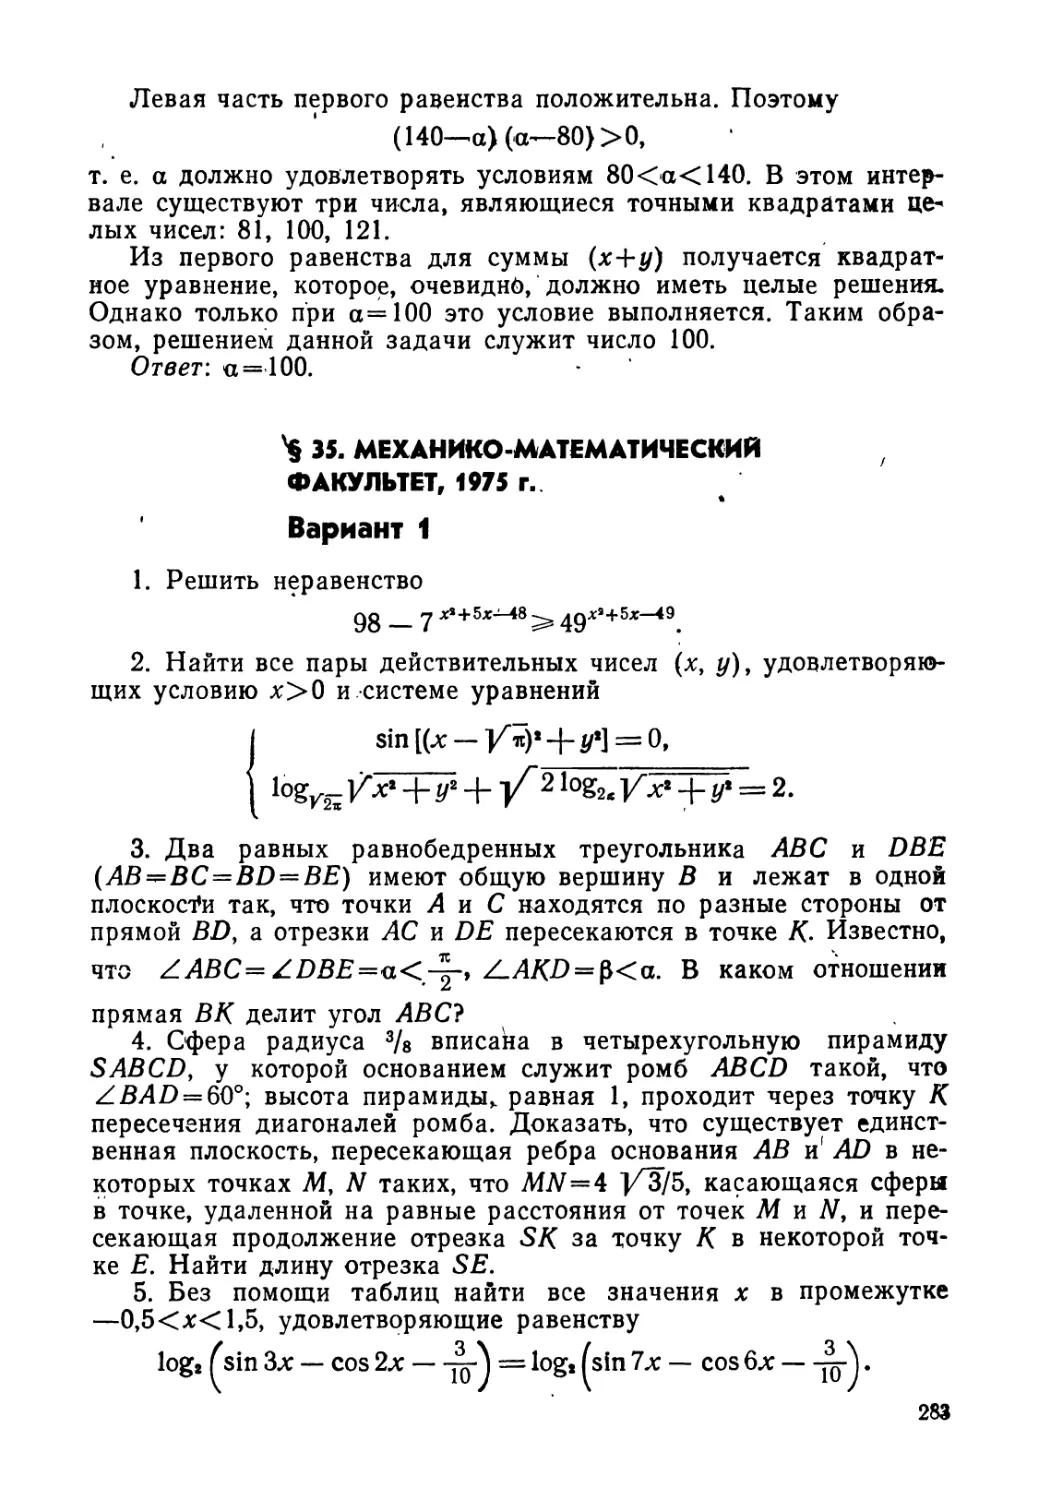 § 35. Механико-математический факультет, 1975 г